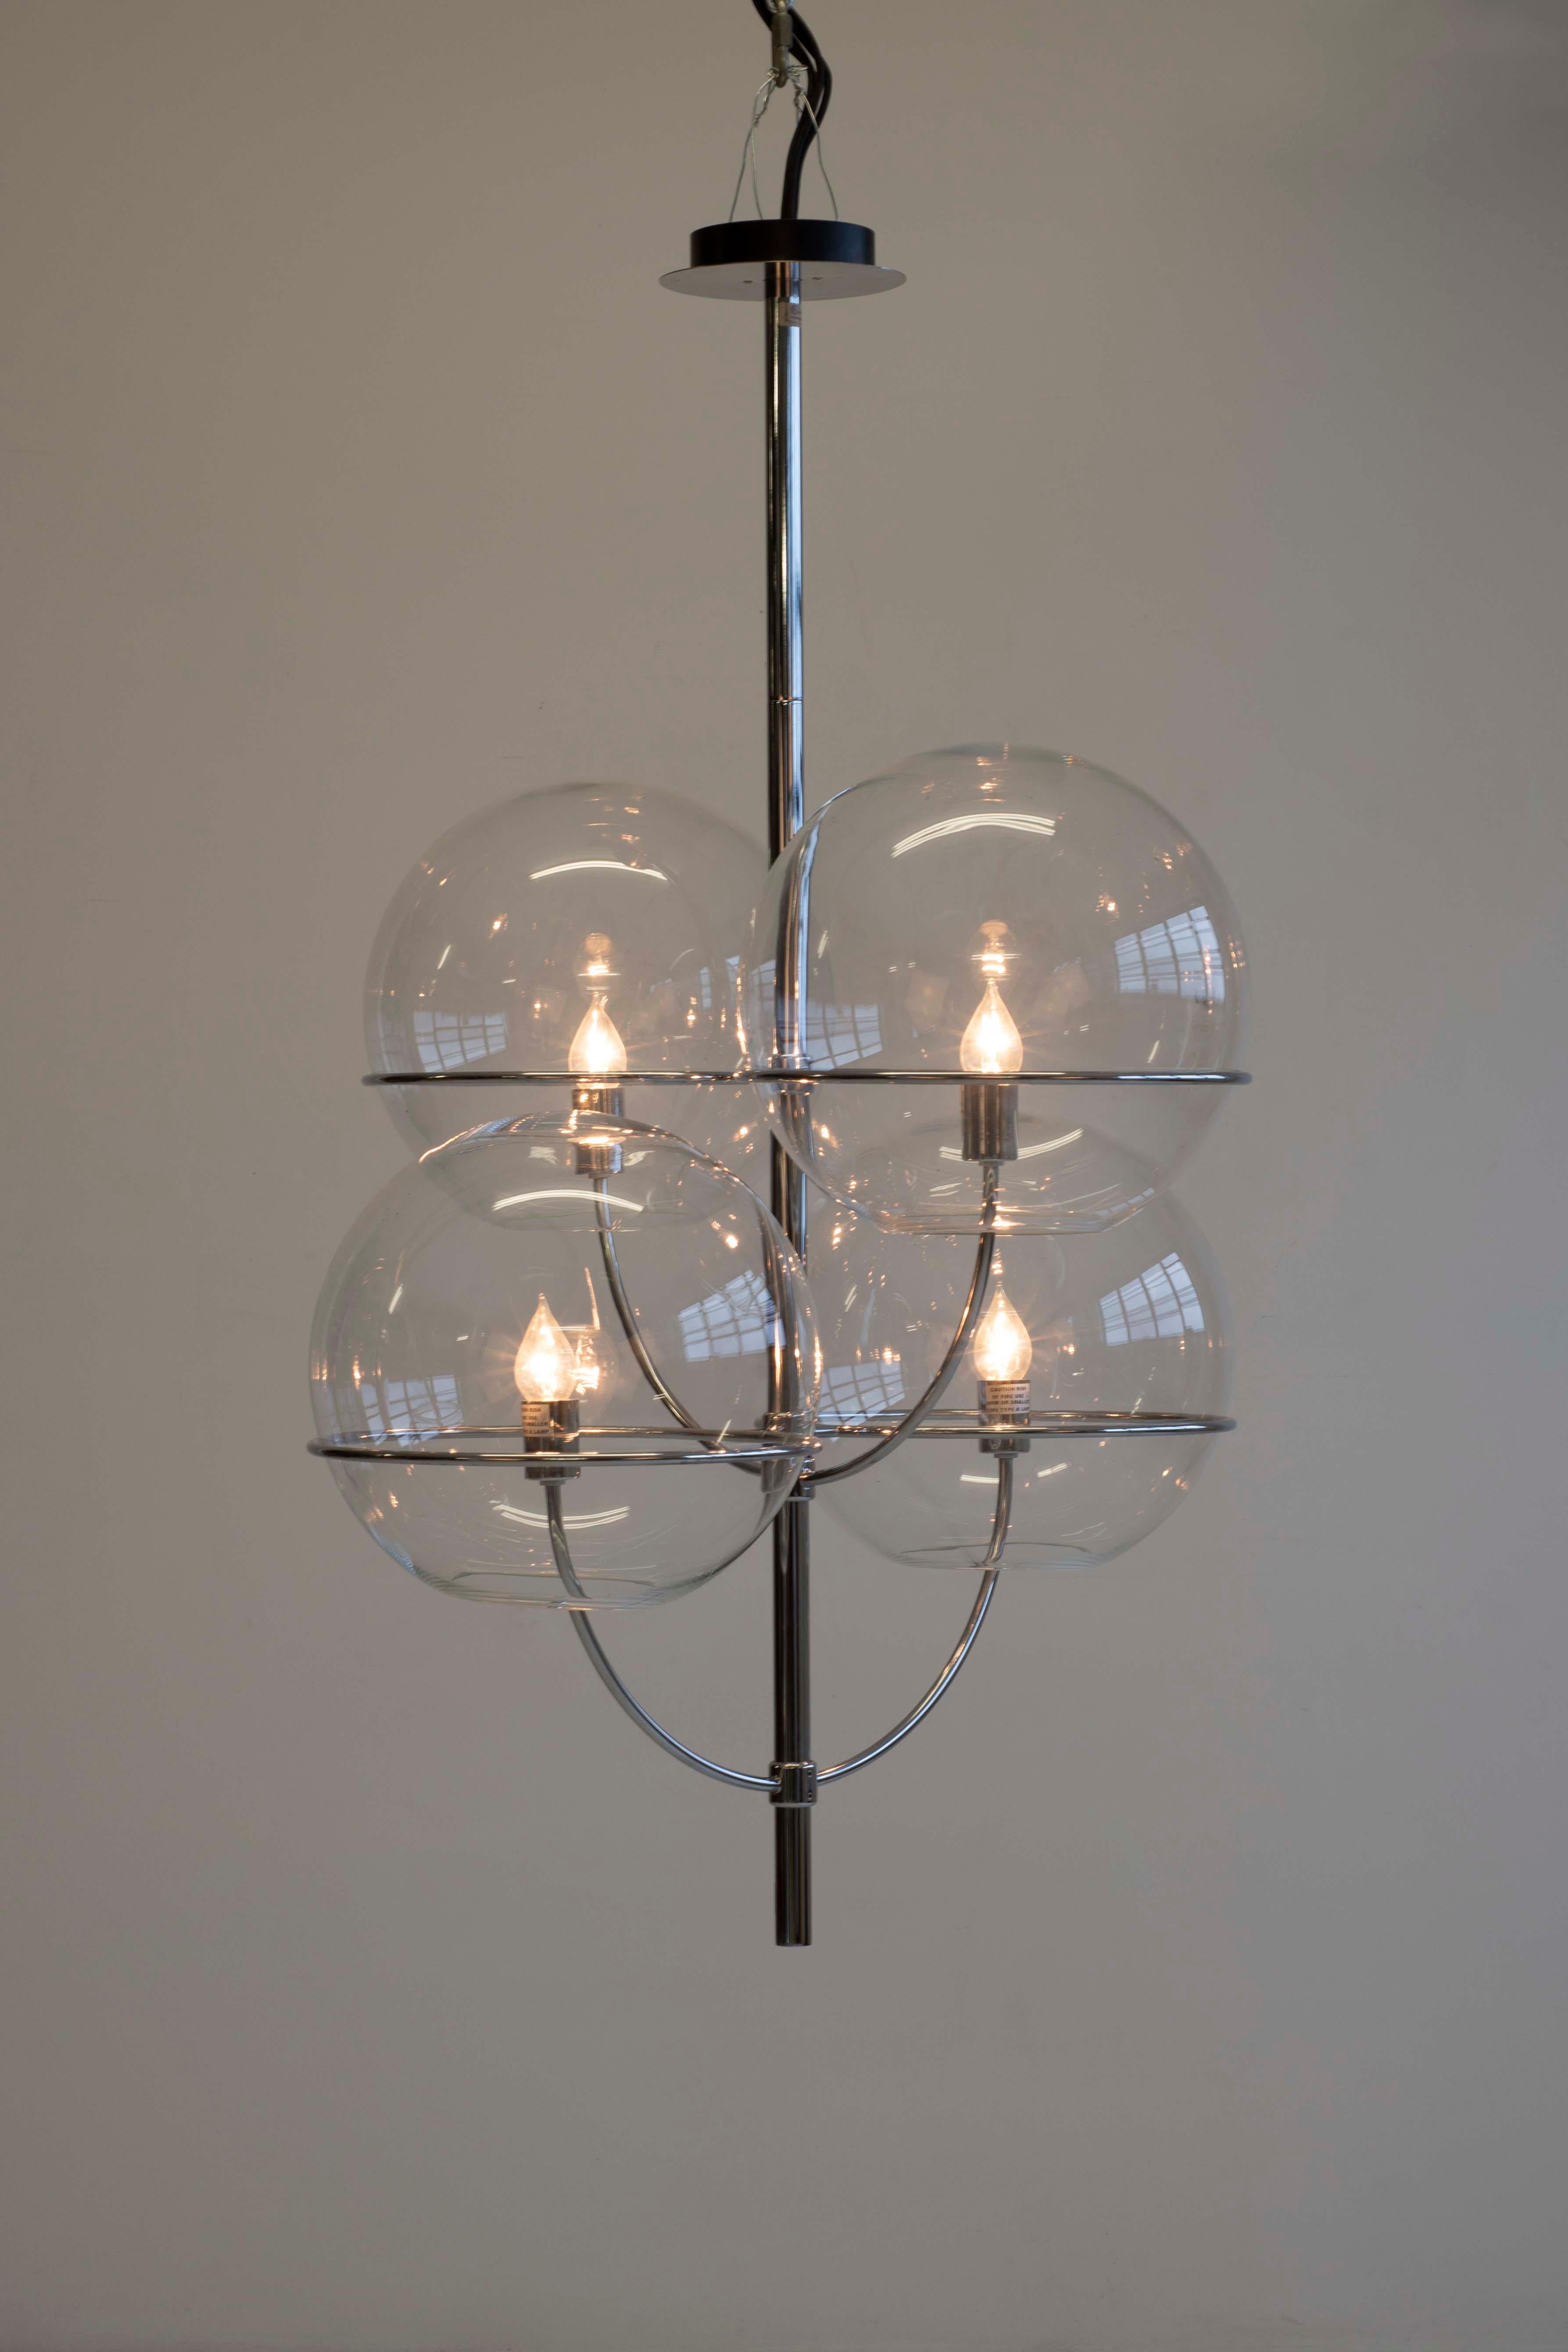 Lyndon de Vico Magistretti pour Oluce ; corps en forme de candélabre à finition chromée, renfermant des sphères en verre transparent, à l'intérieur desquelles se trouve l'ampoule.

 